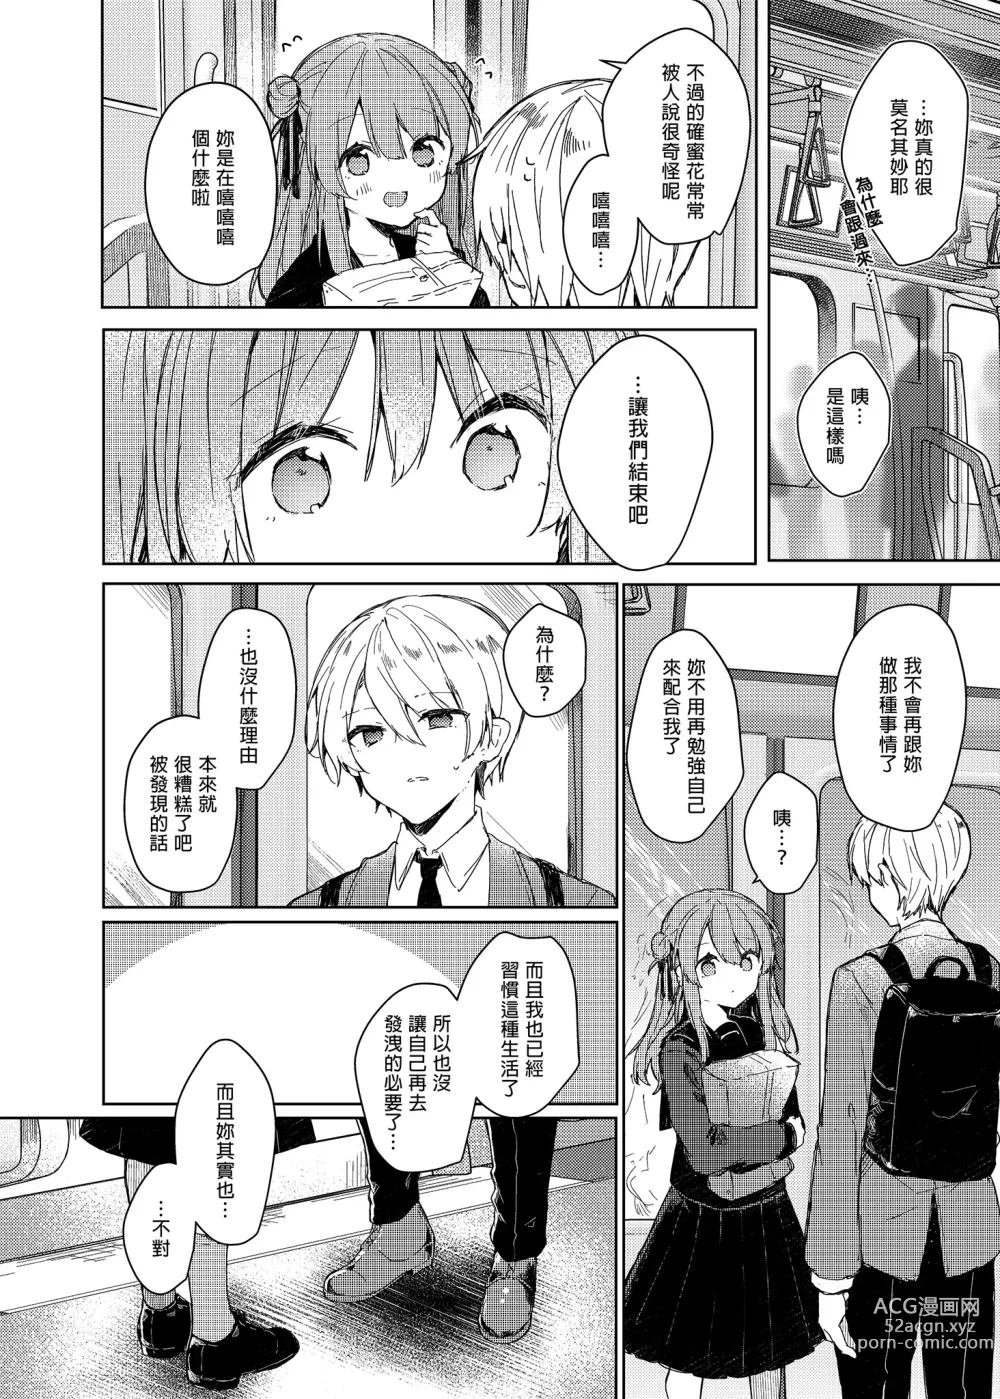 Page 52 of doujinshi 今天開始當個壞孩子。 (decensored)